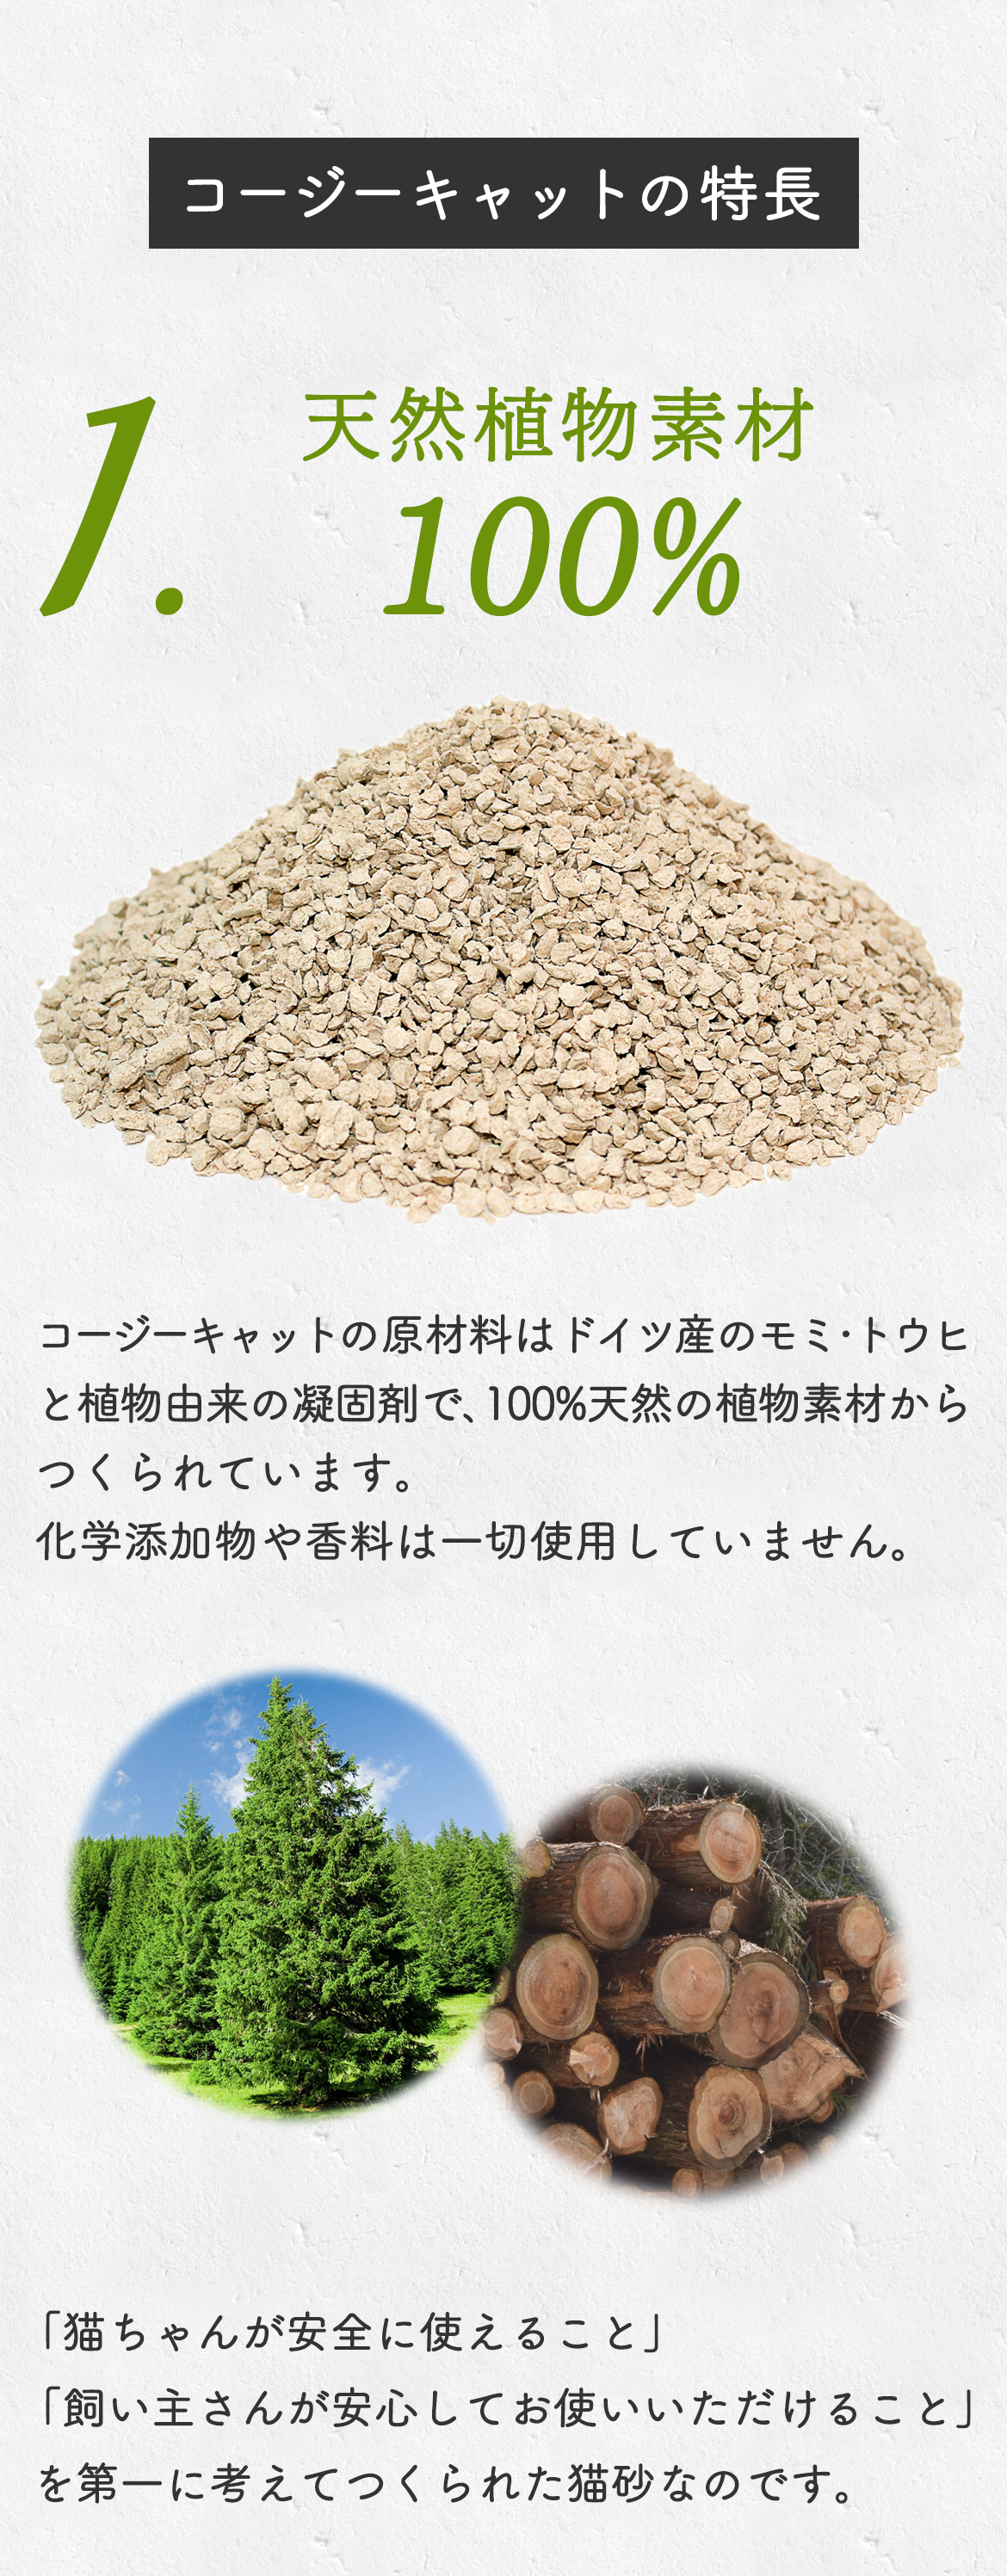 ドイツの猫砂コージーキャットは天然植物素材100%の安心・安全な猫砂です